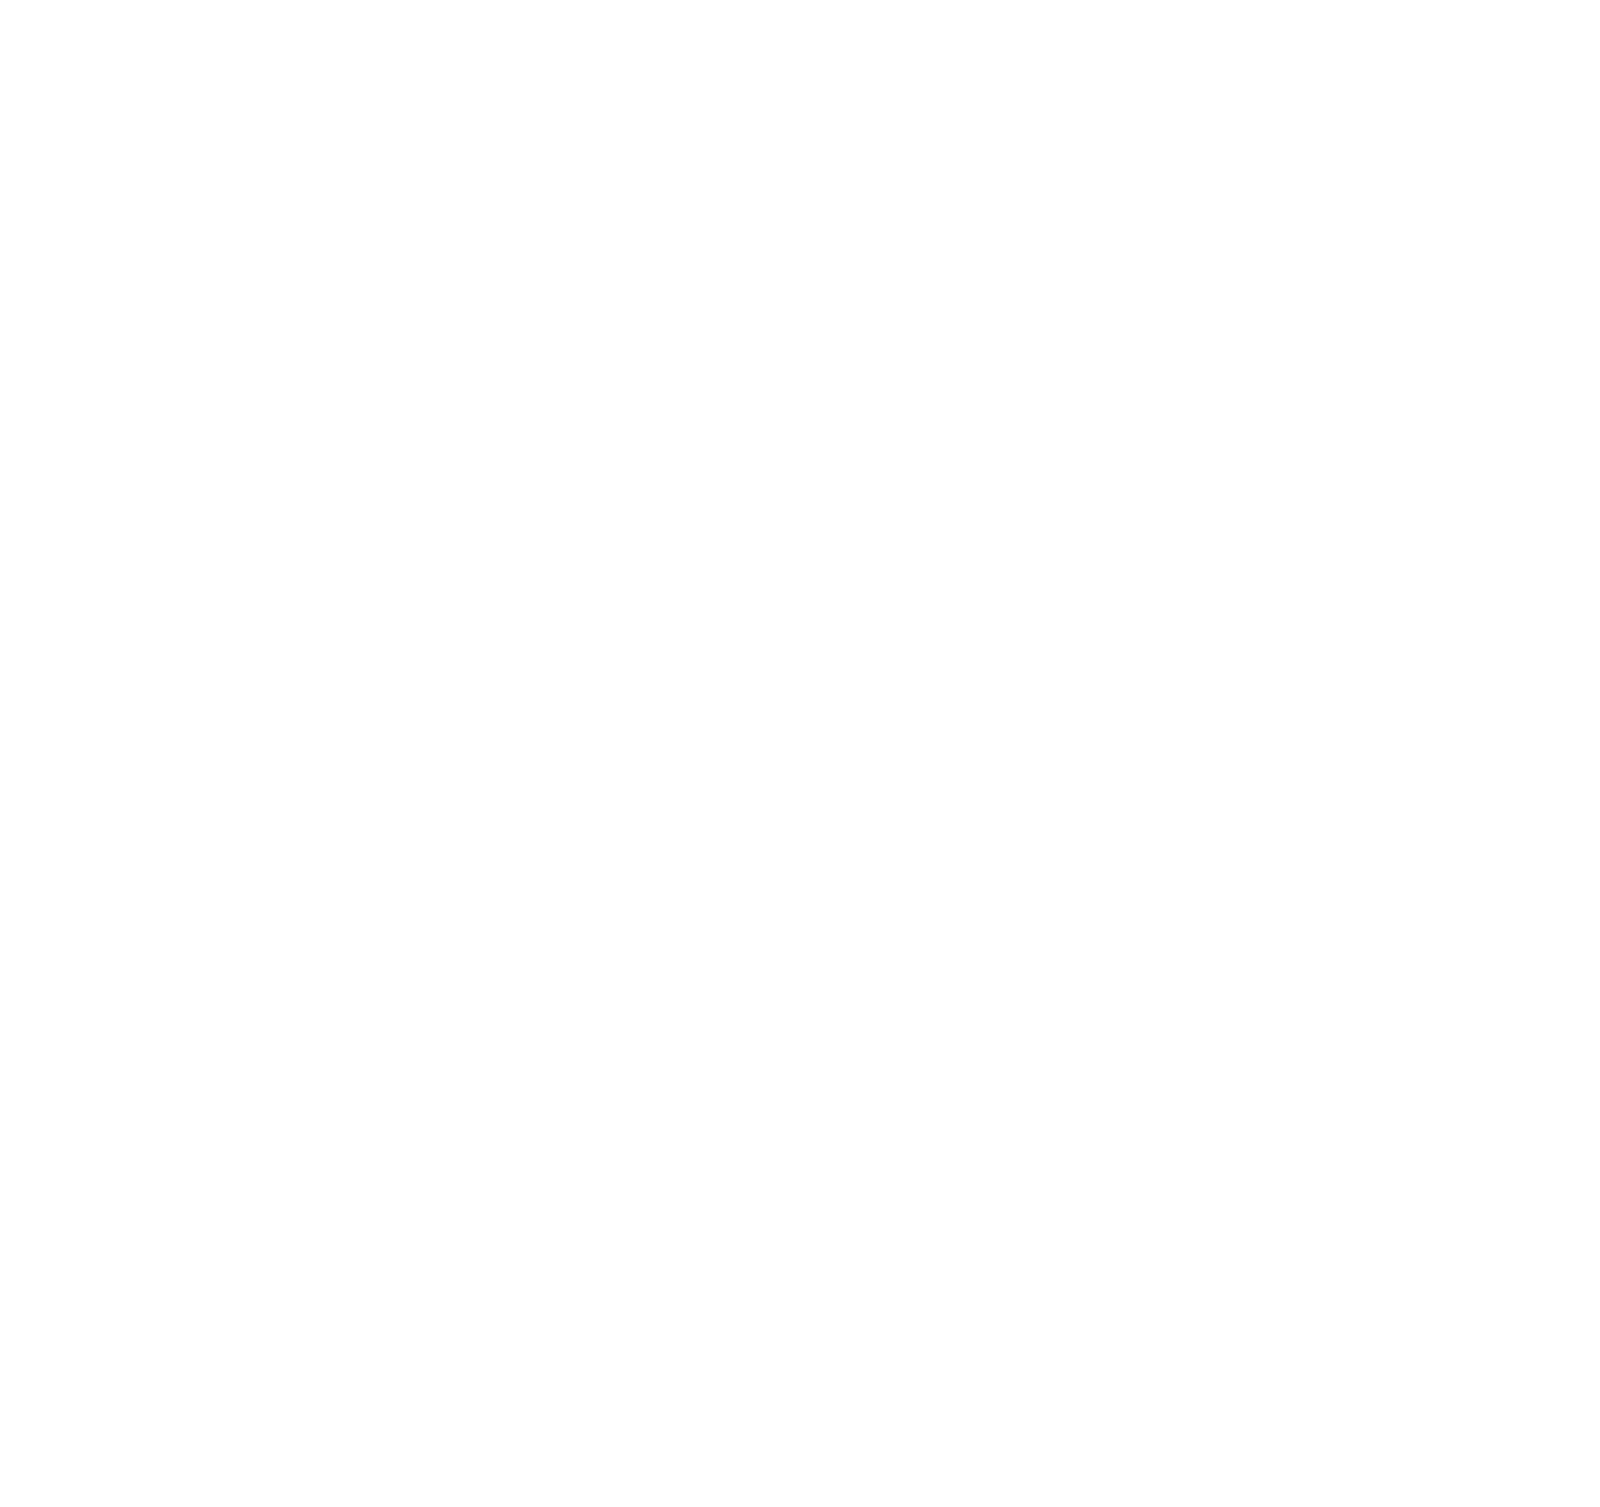 FDP - Foi de Propósito 2 - Comprar em Buró